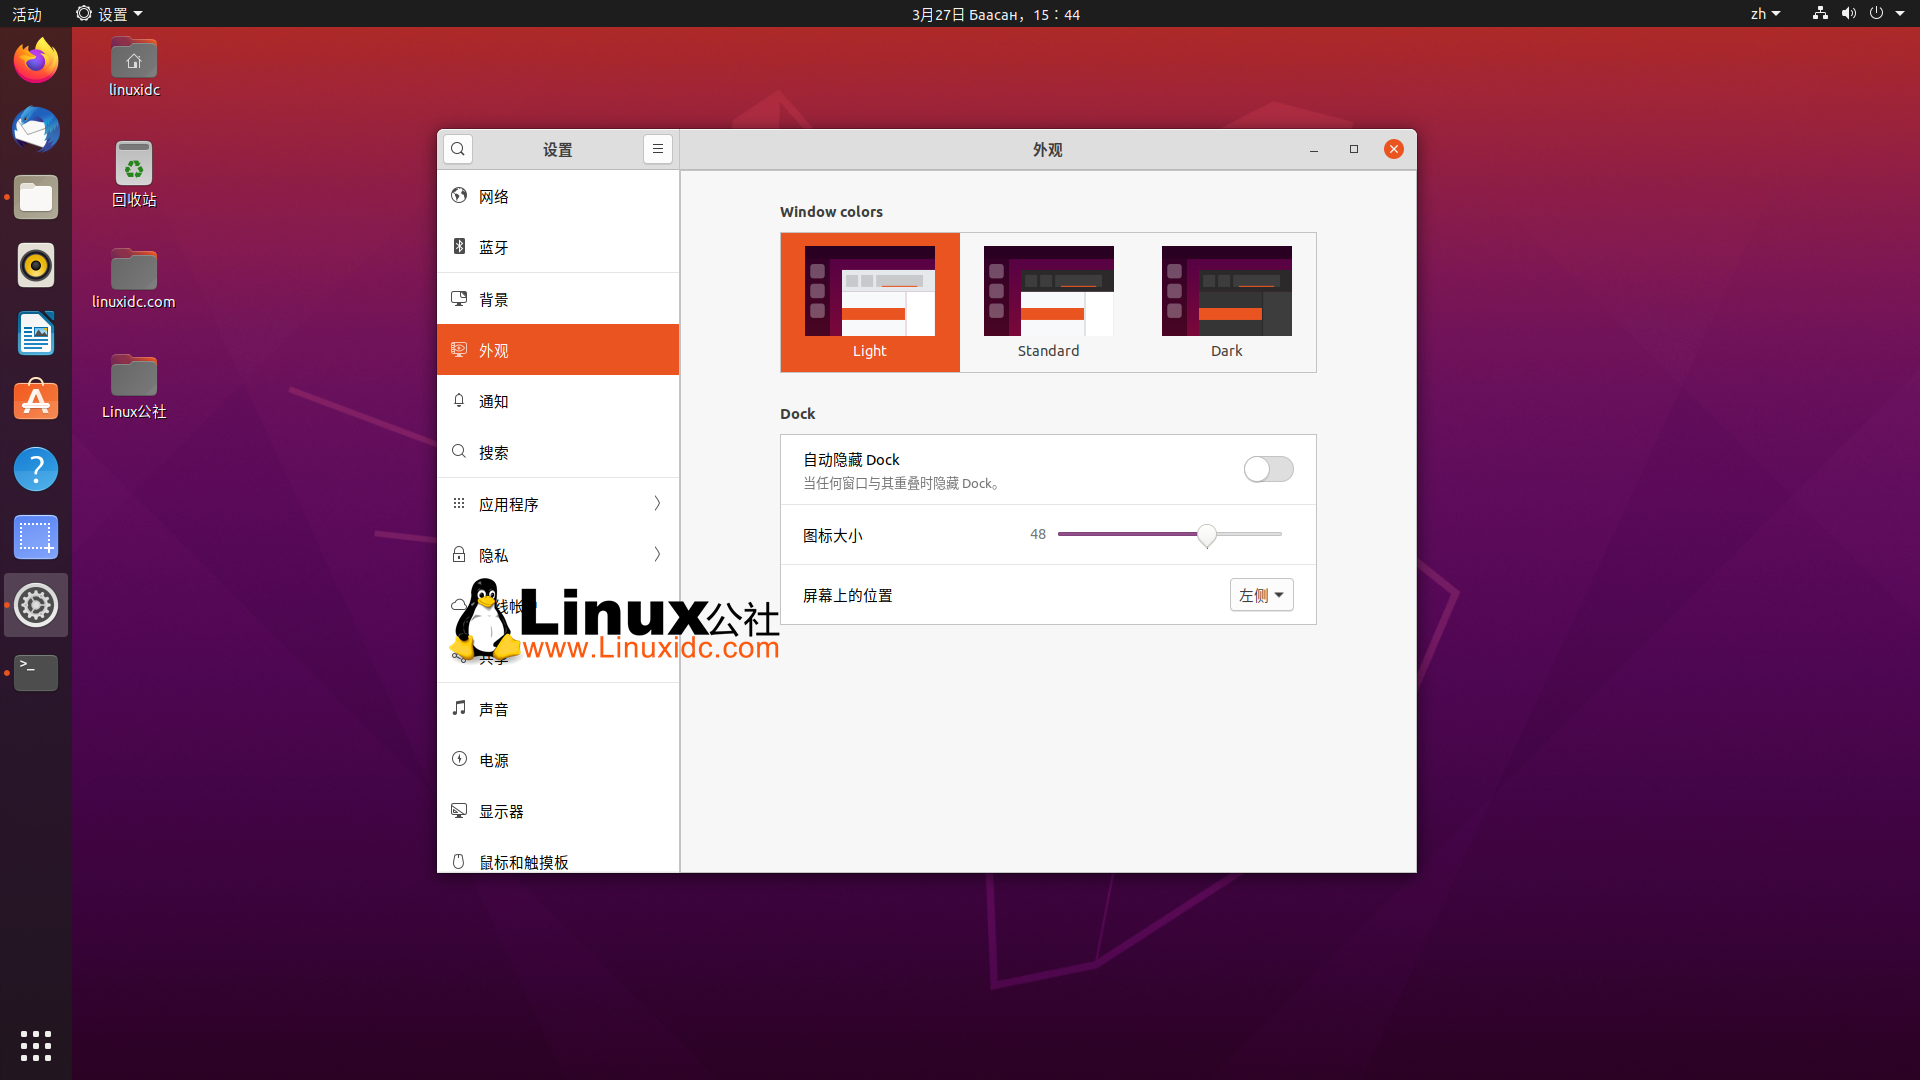 Ubuntu 20.04 LTS Focal Fossa